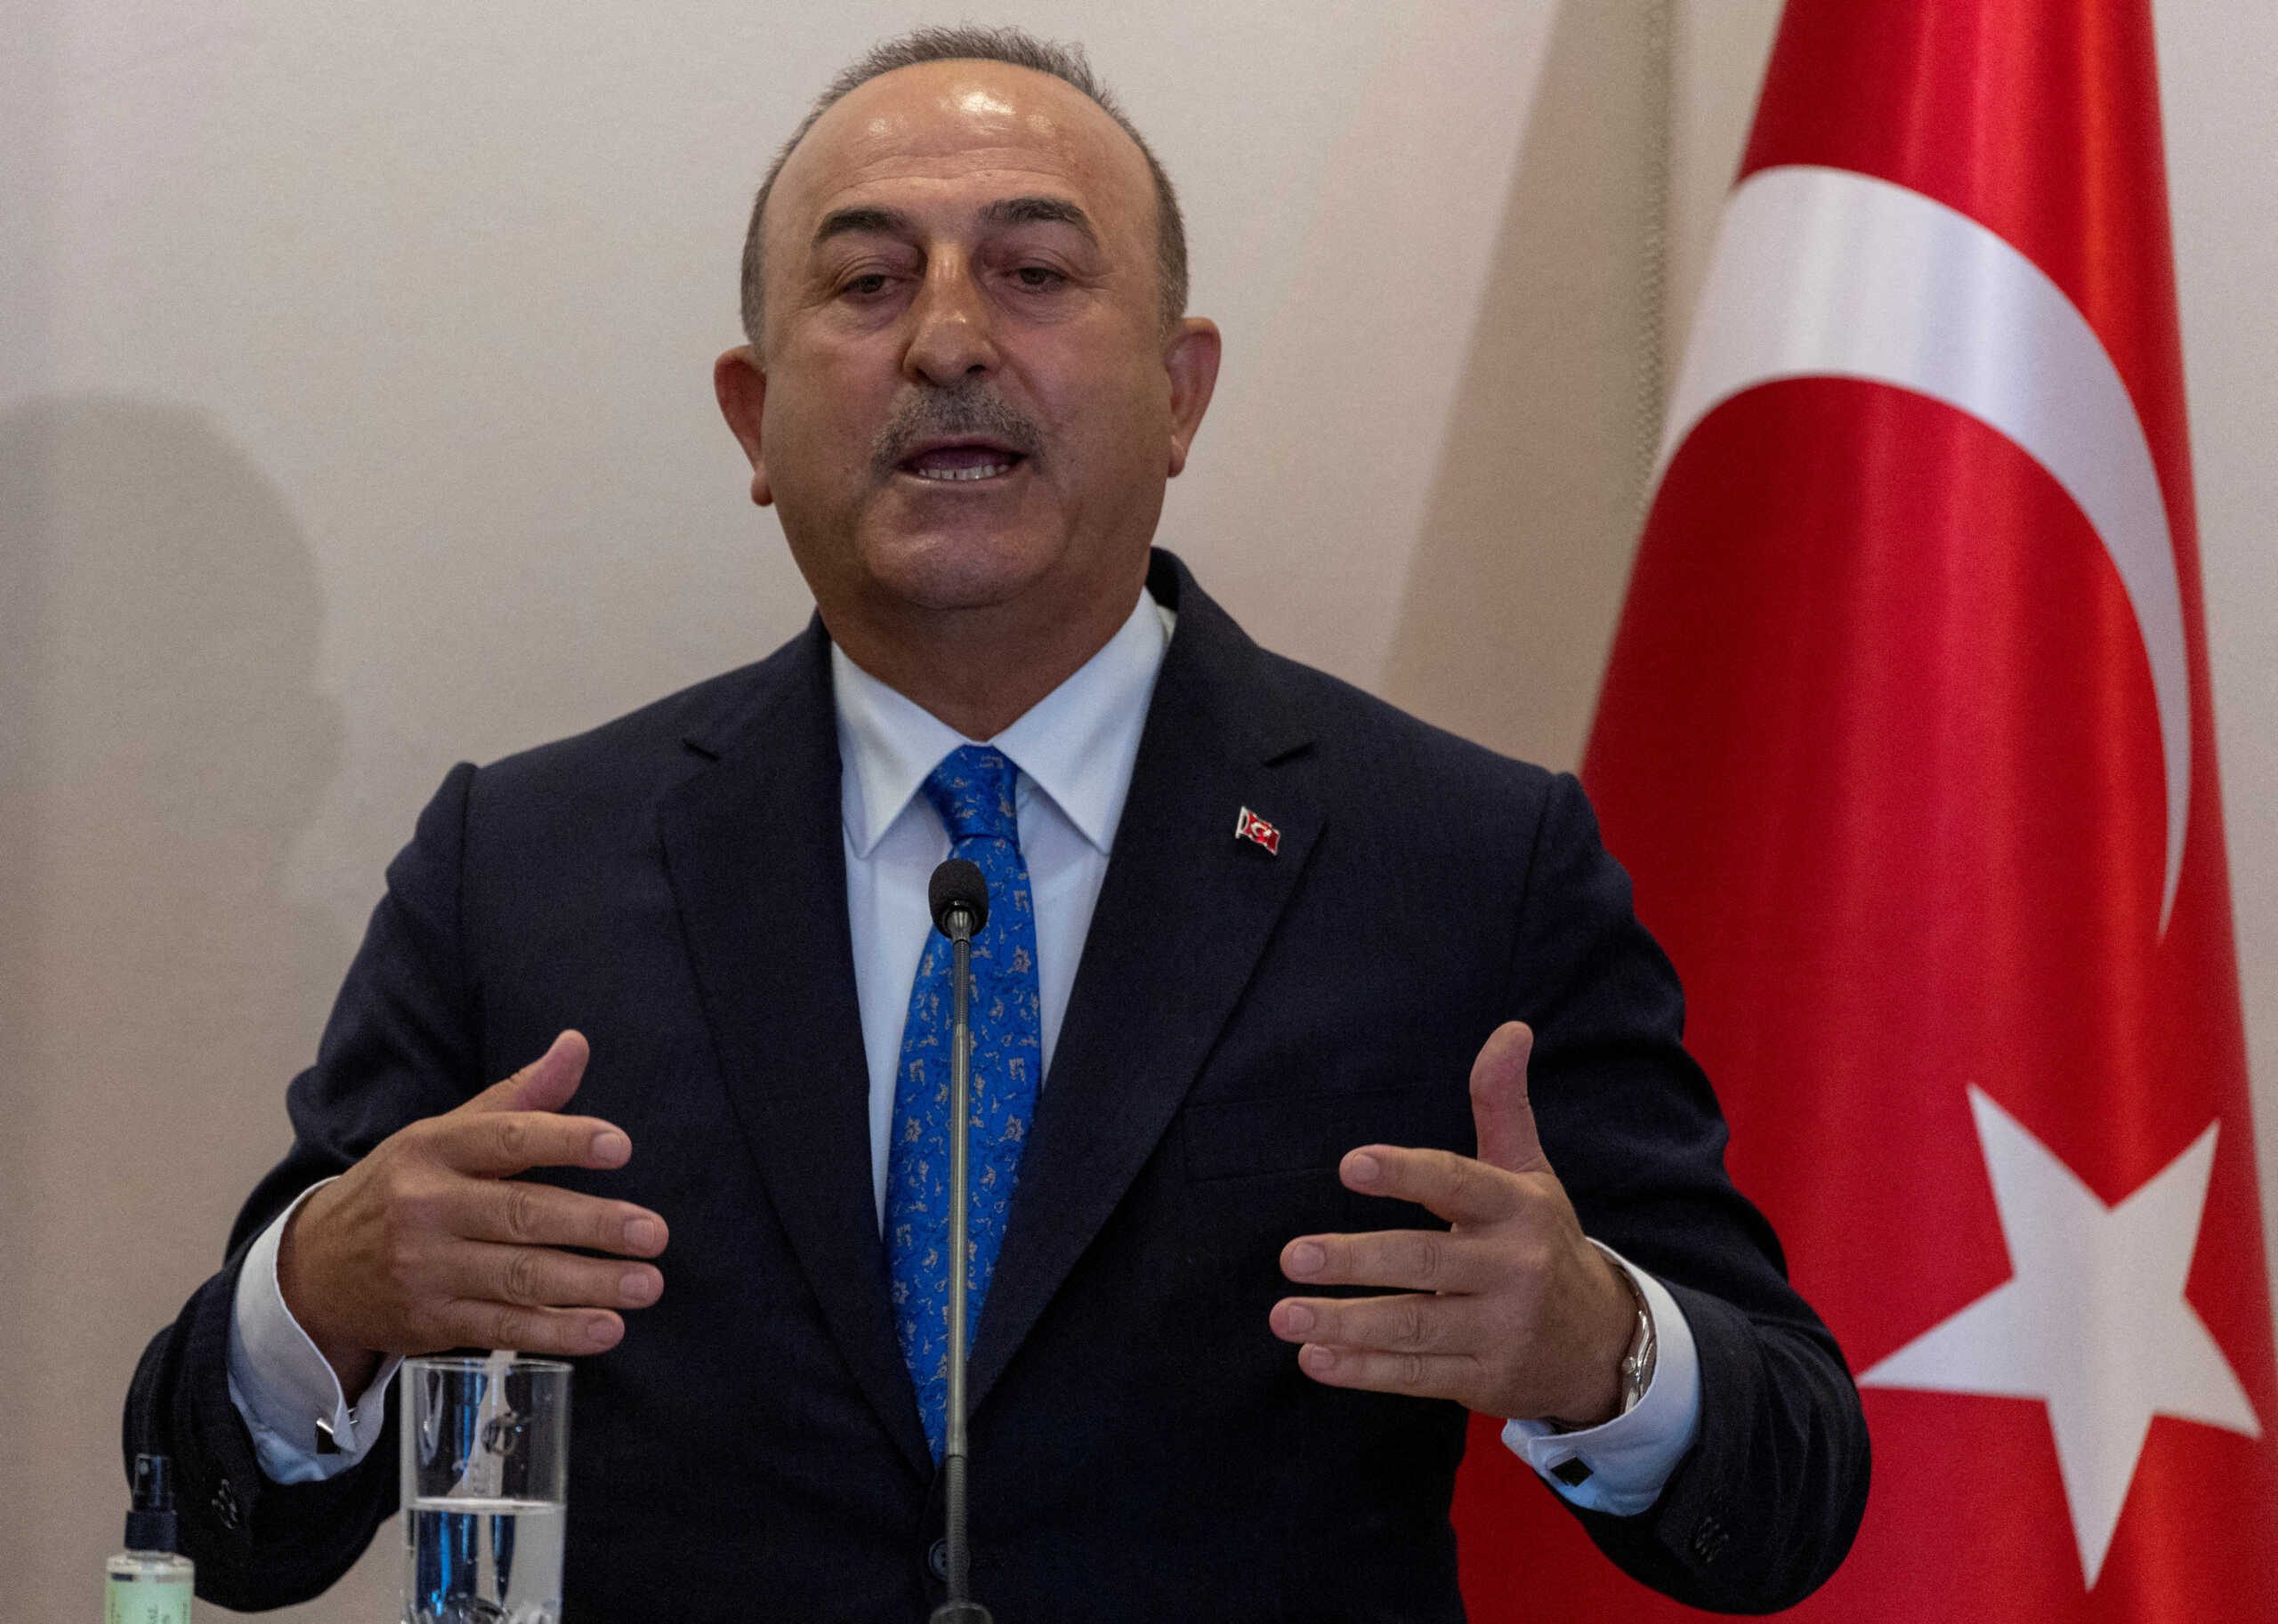 Τουρκία: «Εσκεμμένο» το κλείσιμο προξενείων στην Κωνσταντινούπολη λέει ο Τσαβούσογλου